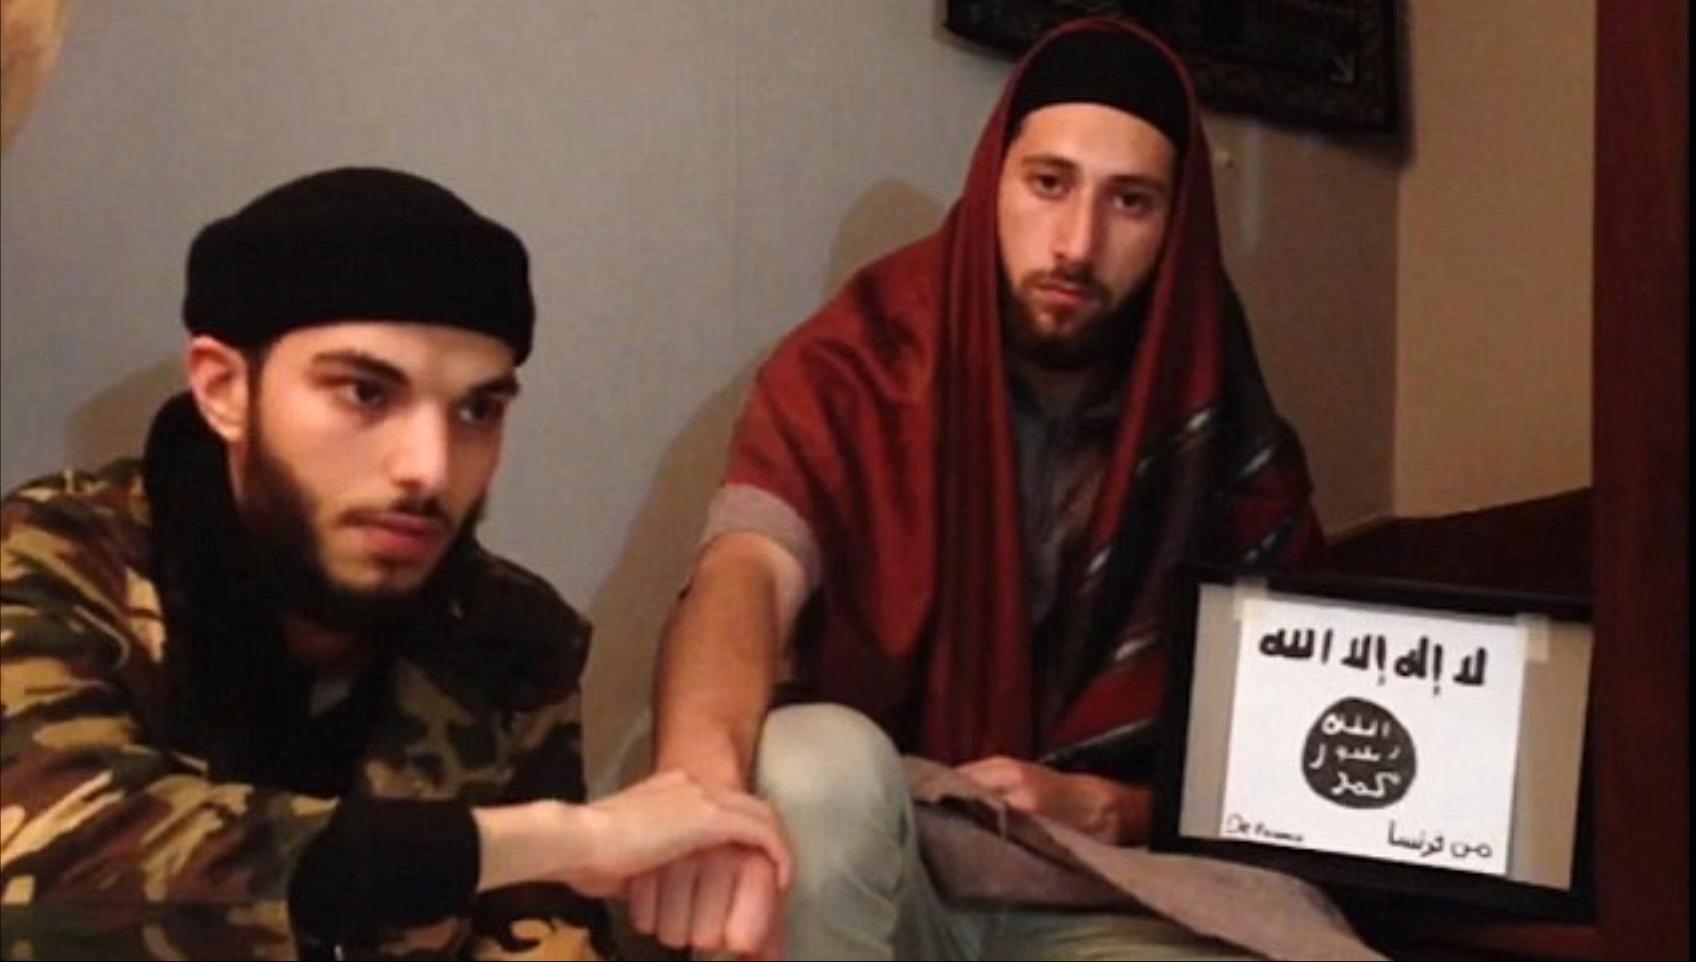 En video publiceras av IS ”Nyhetsbyrå” Amaq visar två män som uppges vara männen från attacken i Frankrike.